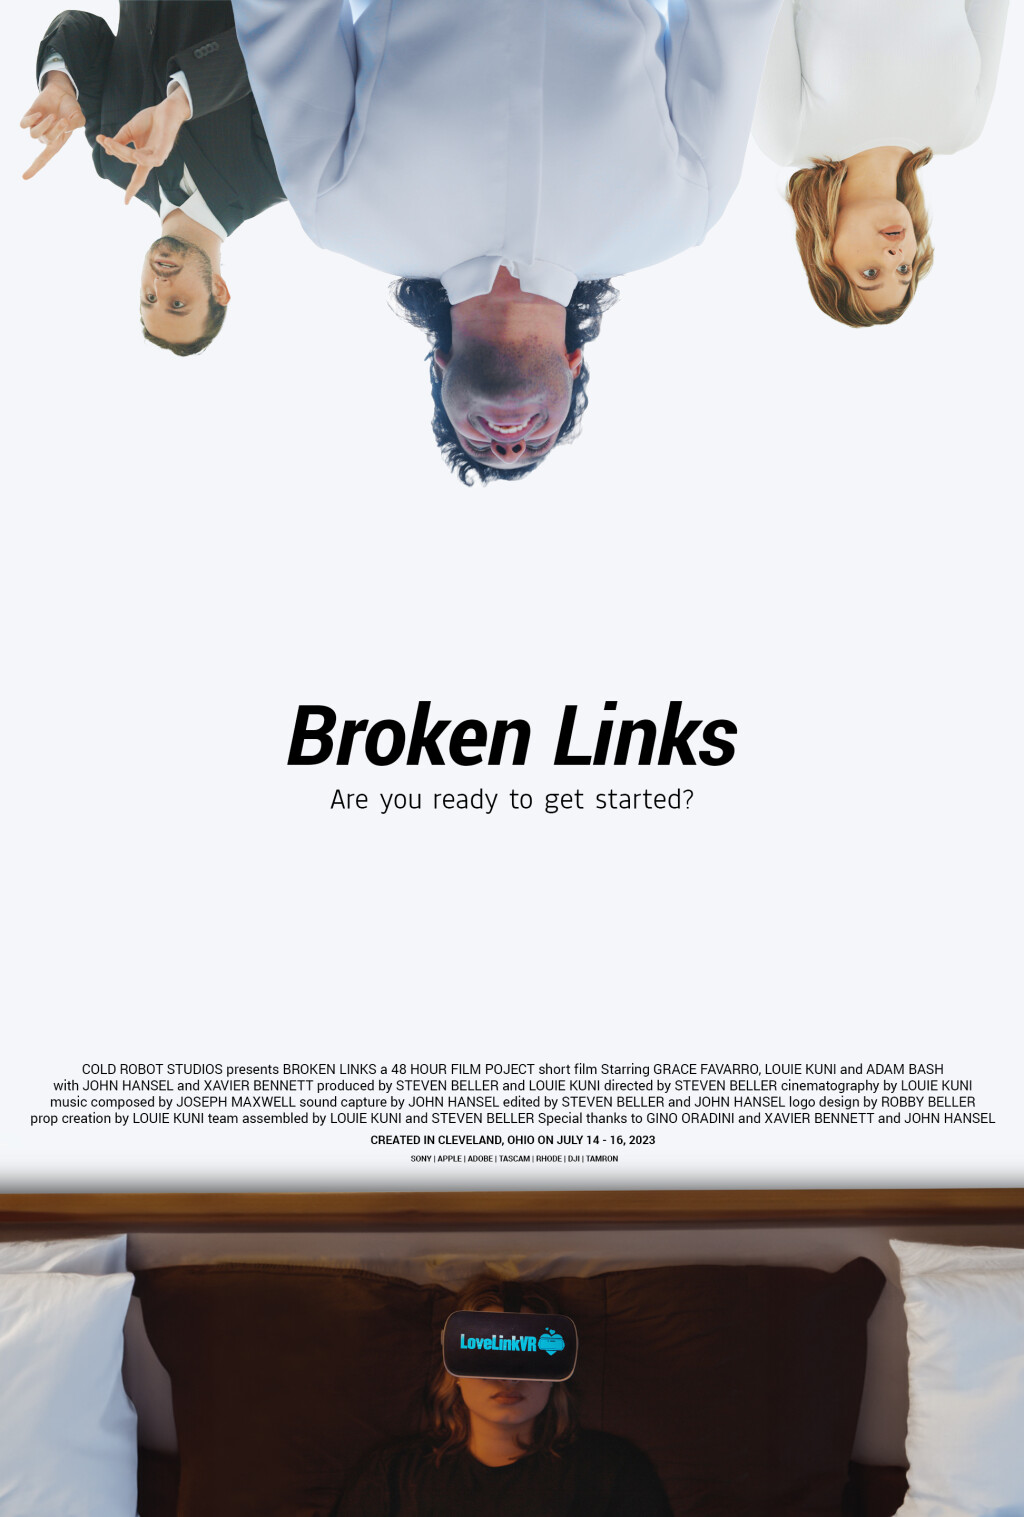 Filmposter for Broken Links